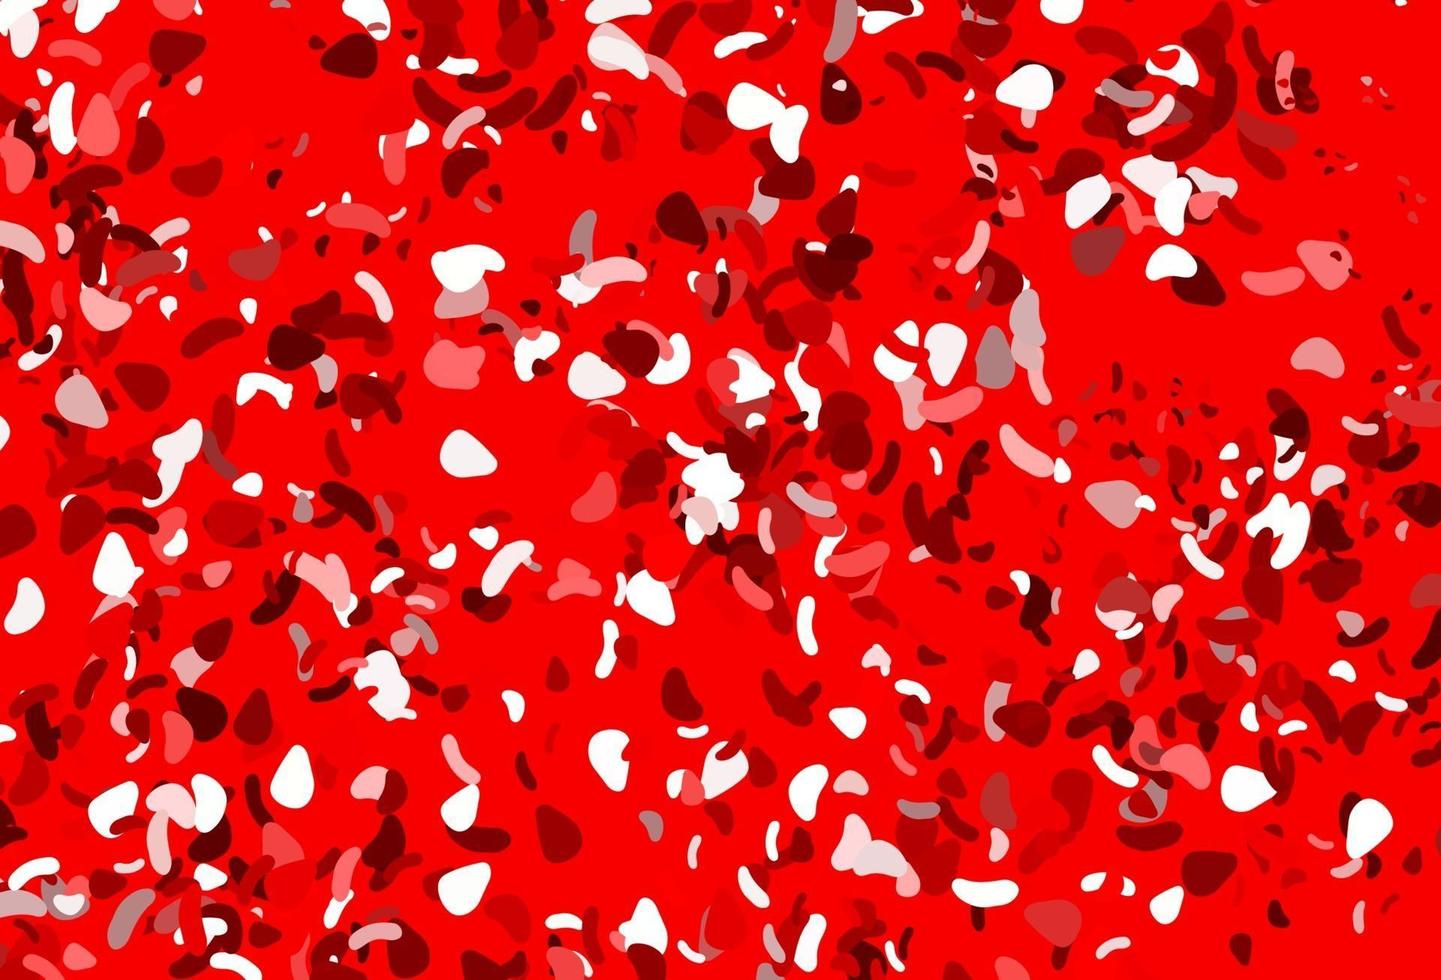 padrão de vetor vermelho claro com formas caóticas.